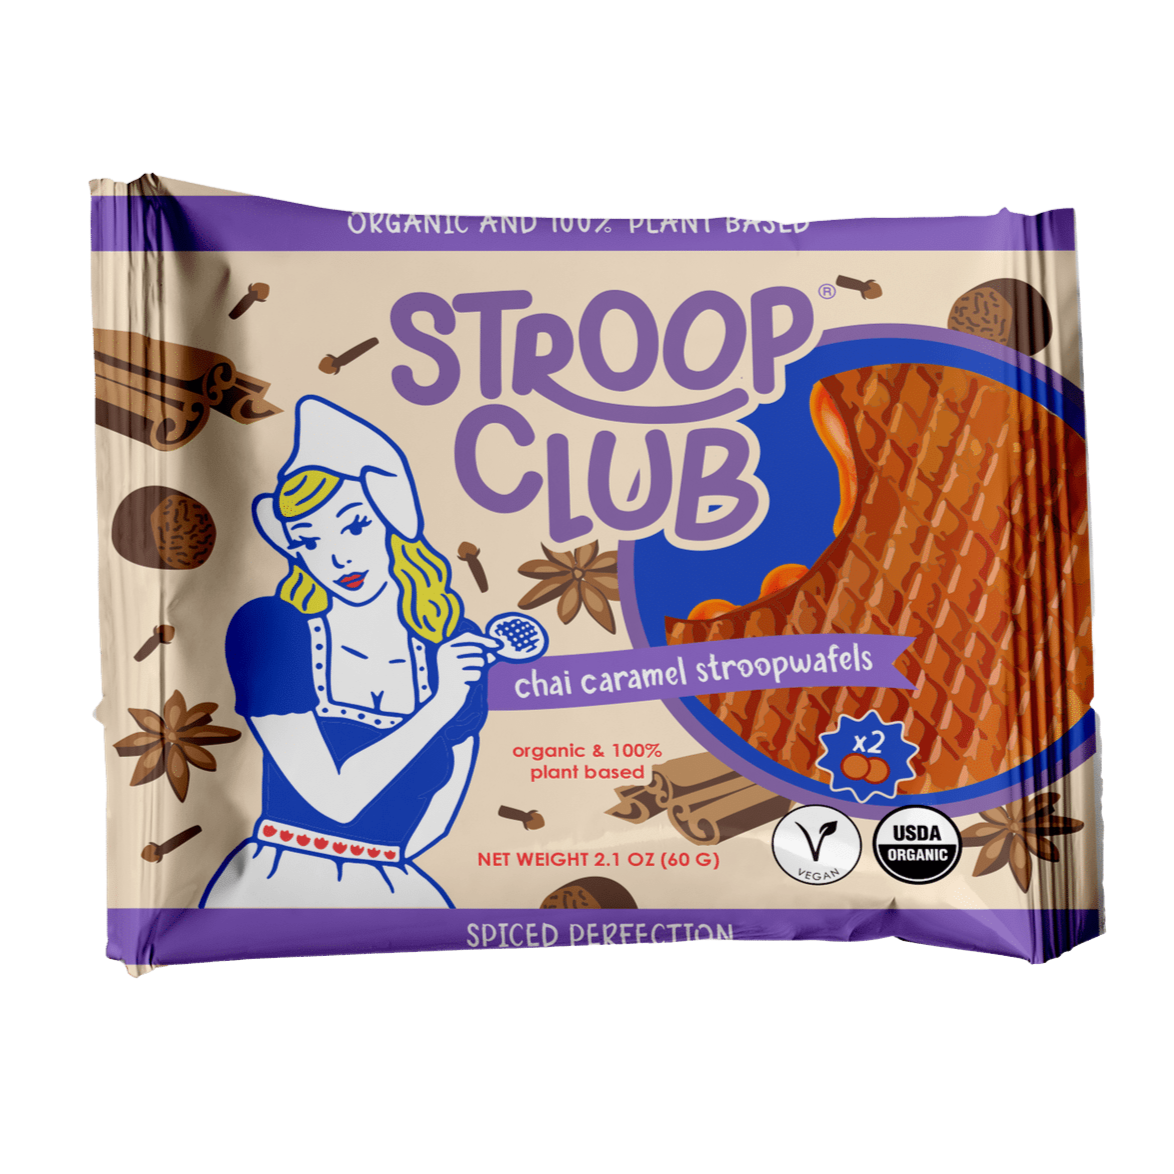 Stroop Club Vegan Chai Caramel Stroopwafel Cookies - 66g